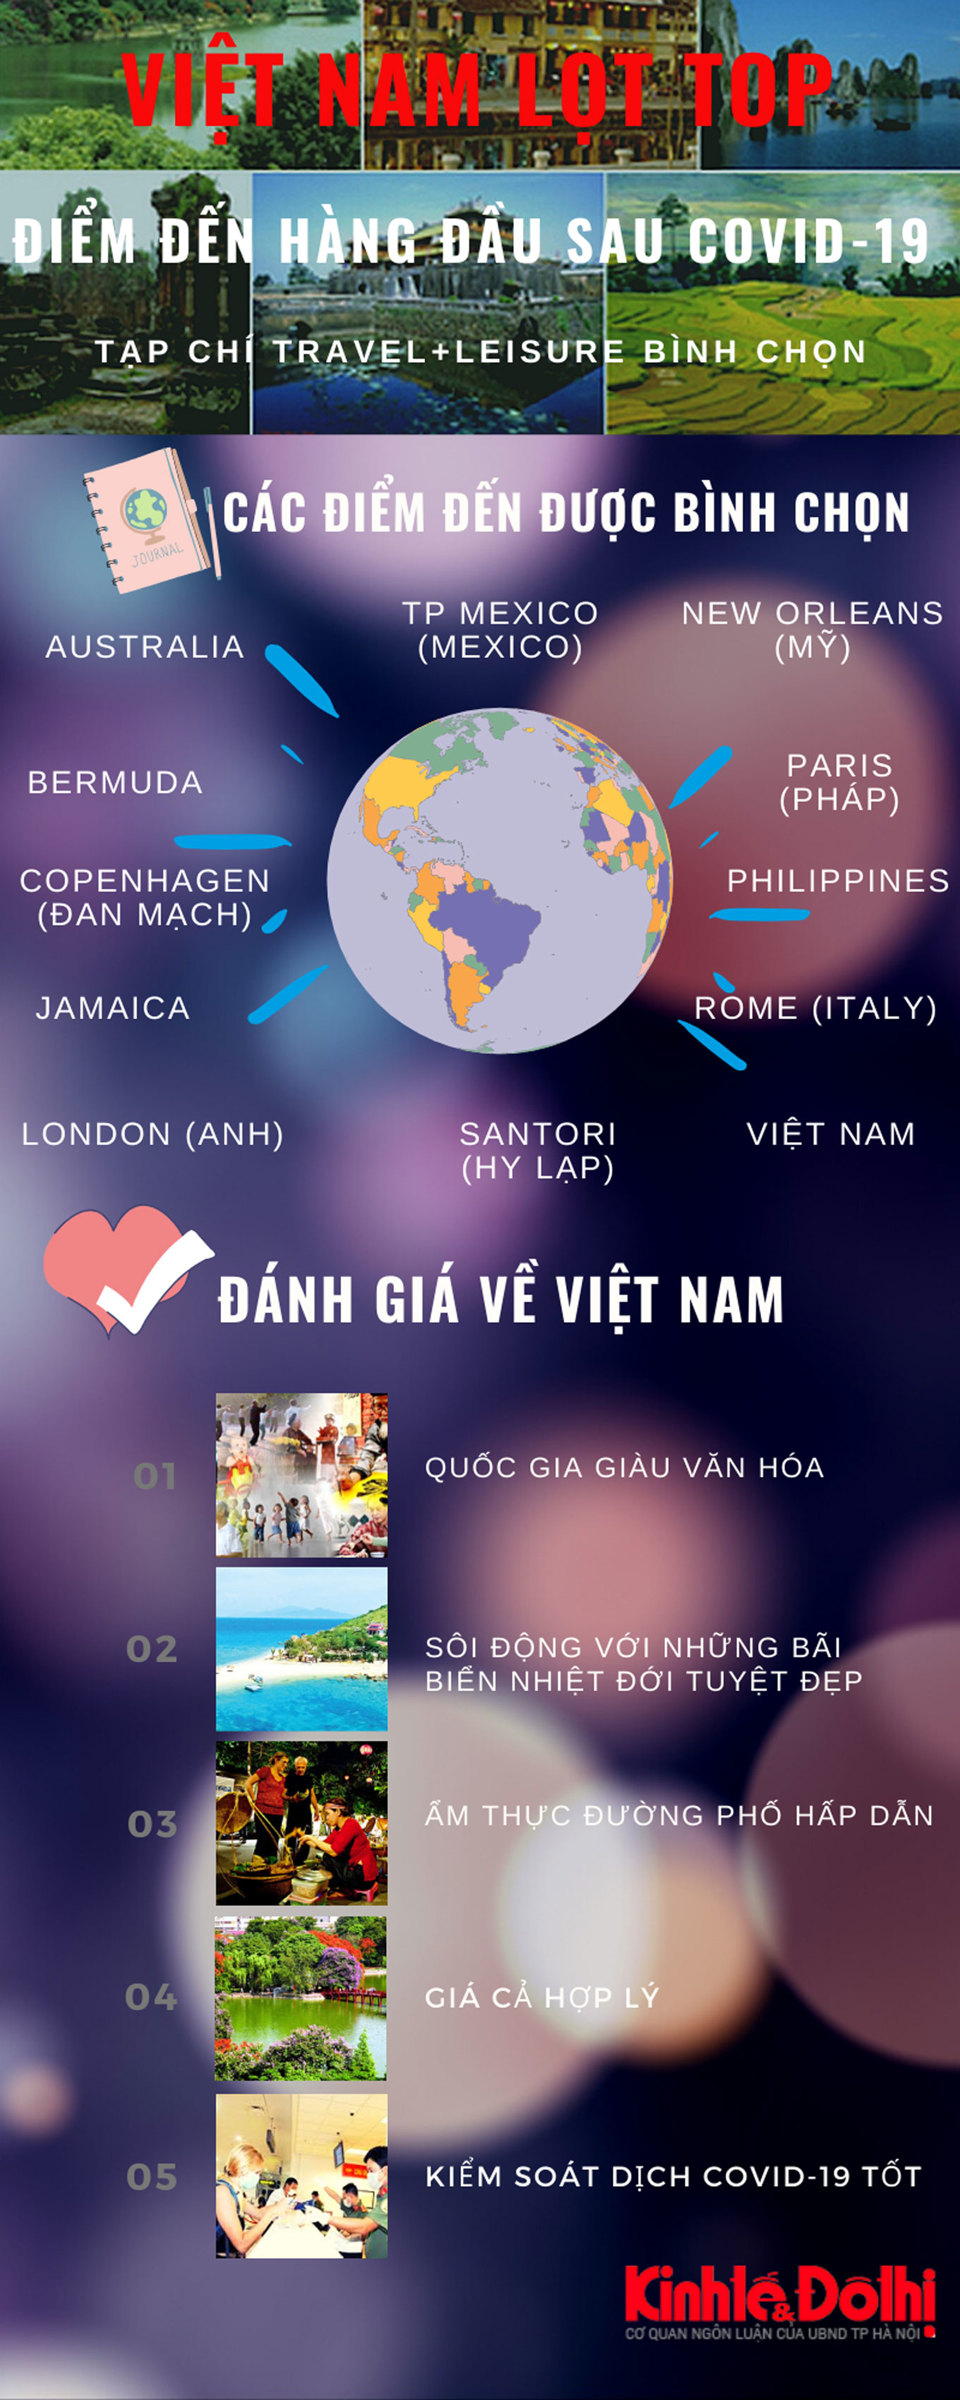 [Infographic] Việt Nam được chọn là điểm đến hàng đầu thế giới sau dịch Covid-19 - Ảnh 1